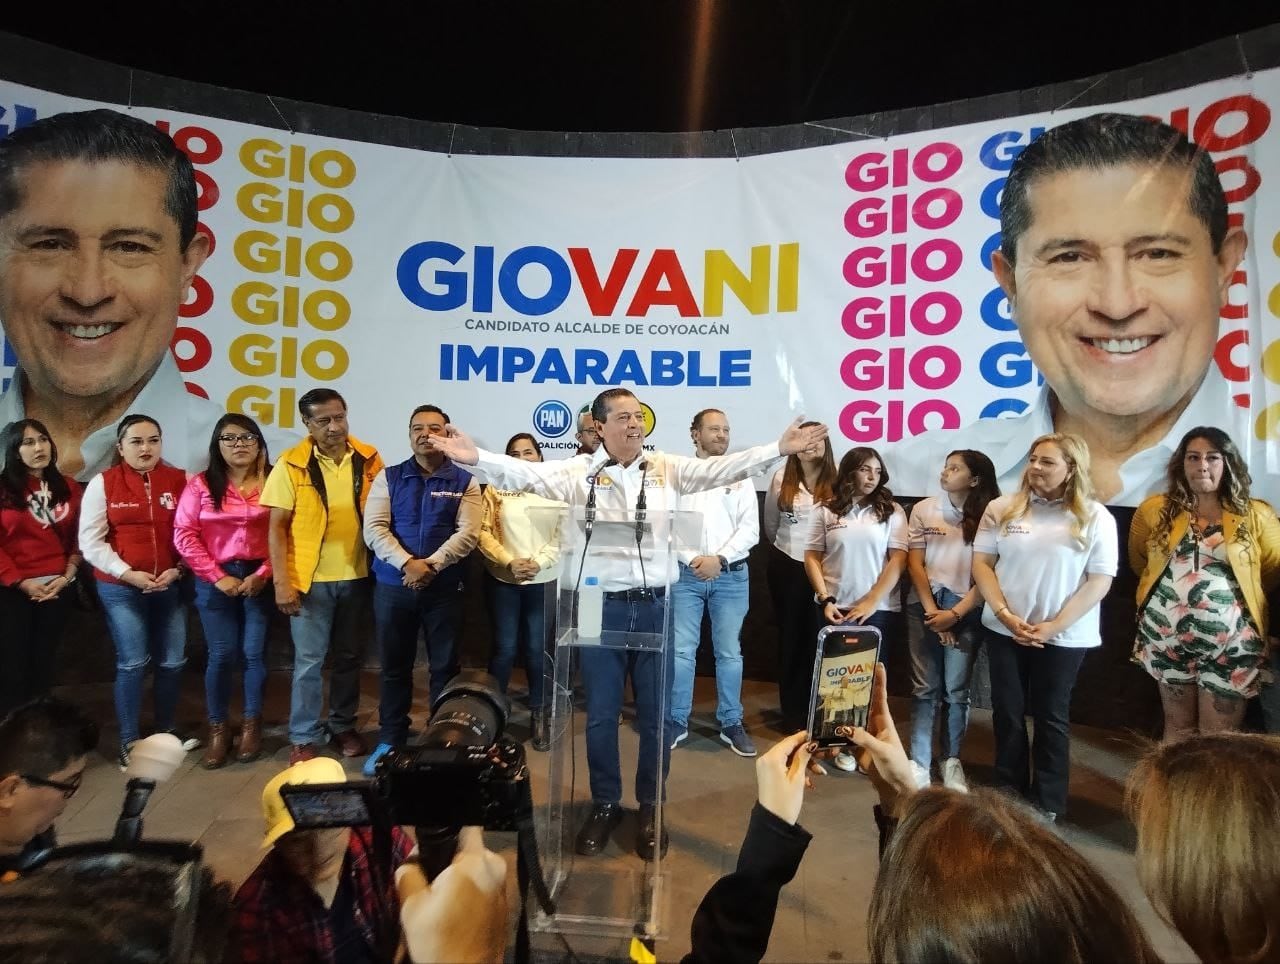 Giovani Gutiérrez Aguilar inicia campaña de reelección por alcaldía Coyoacán